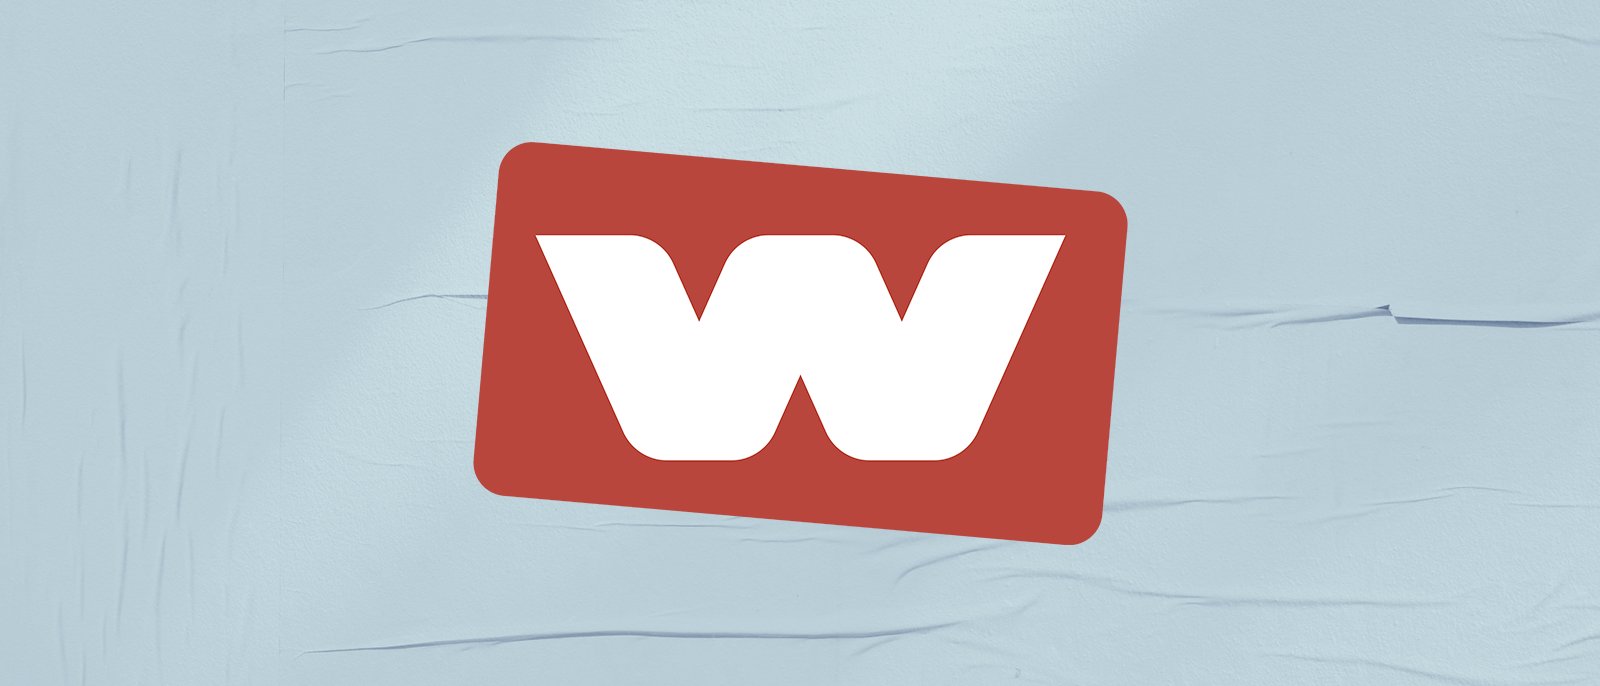 W TV Channel - Watch W Online